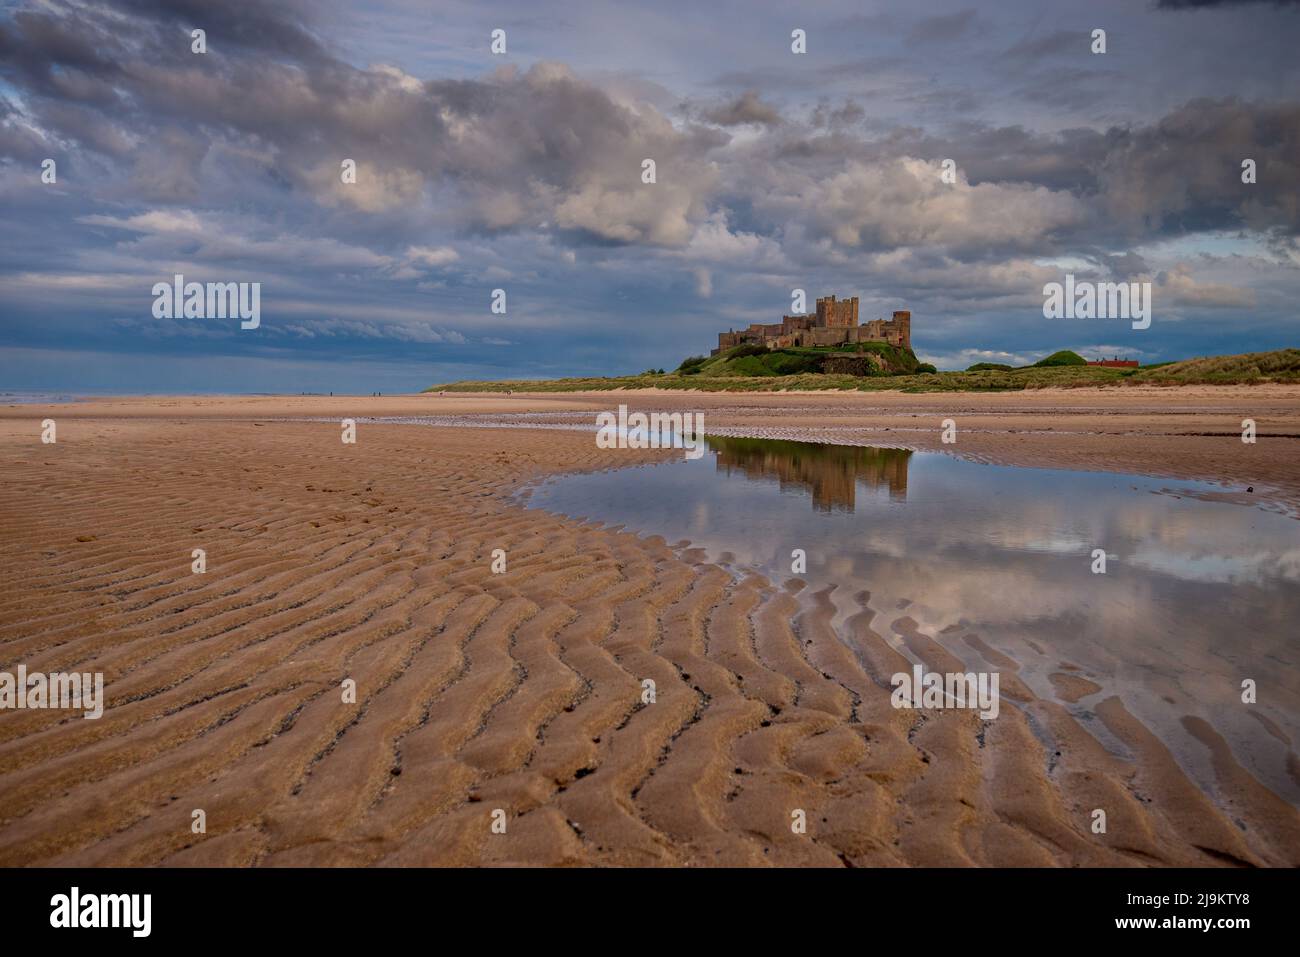 La plage, le château de Bamburgh sur la côte de Northumberland. Banque D'Images